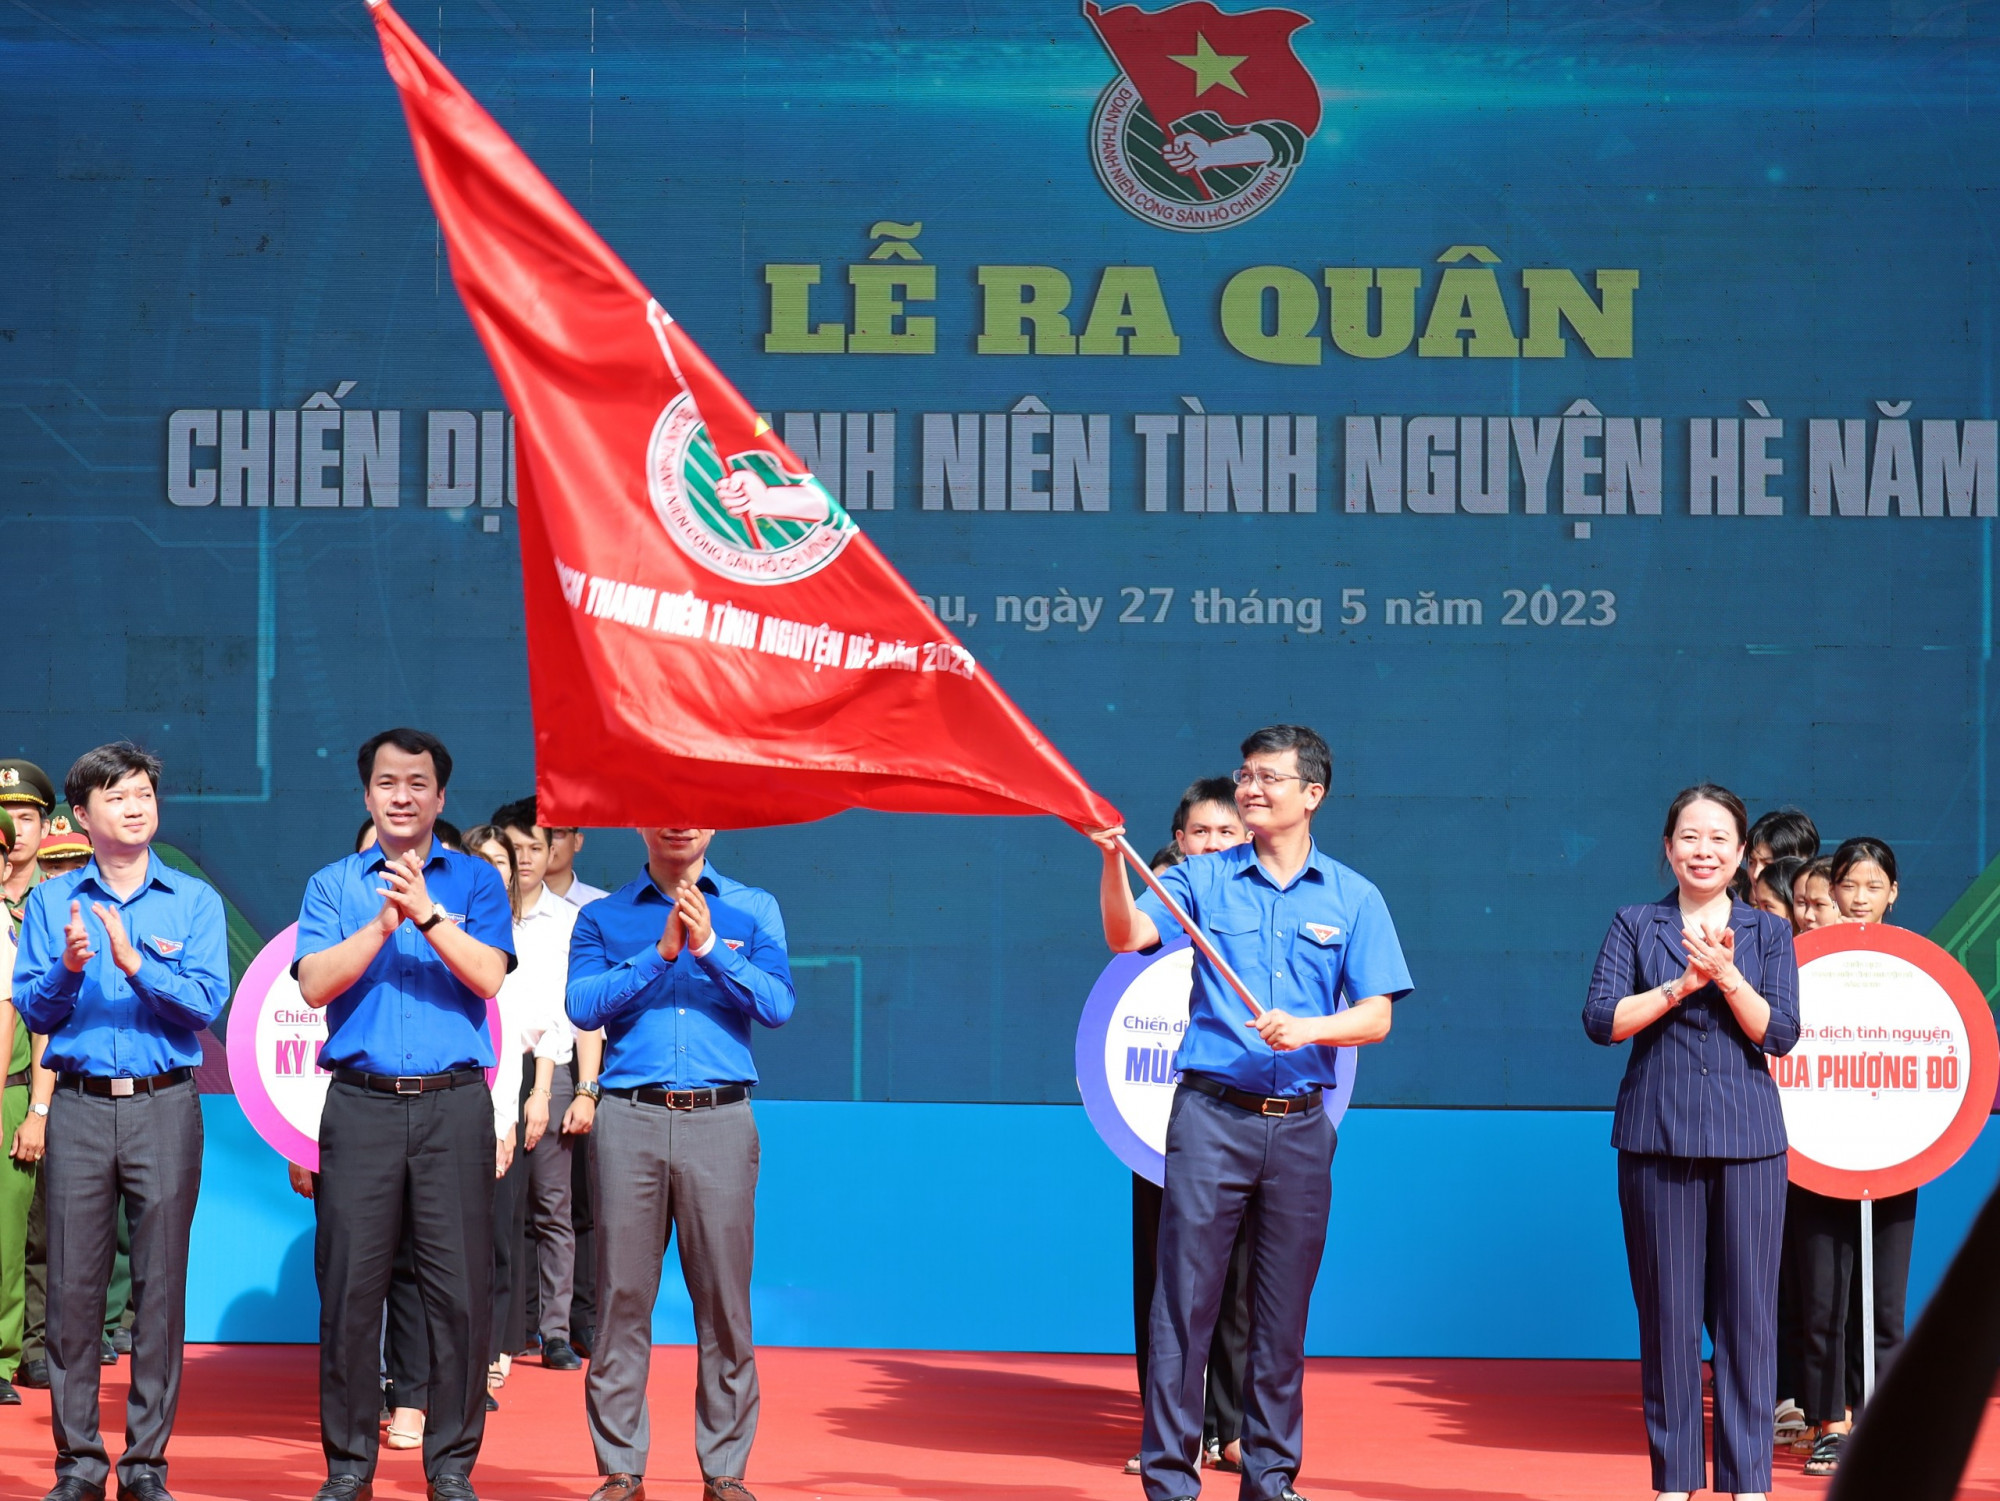 Phó chủ tịch nước Võ Thị Ánh Xuân trao cờ khởi động chiến dịch tháng niên tình nguyện hè. Ảnh: Trung Phạm 